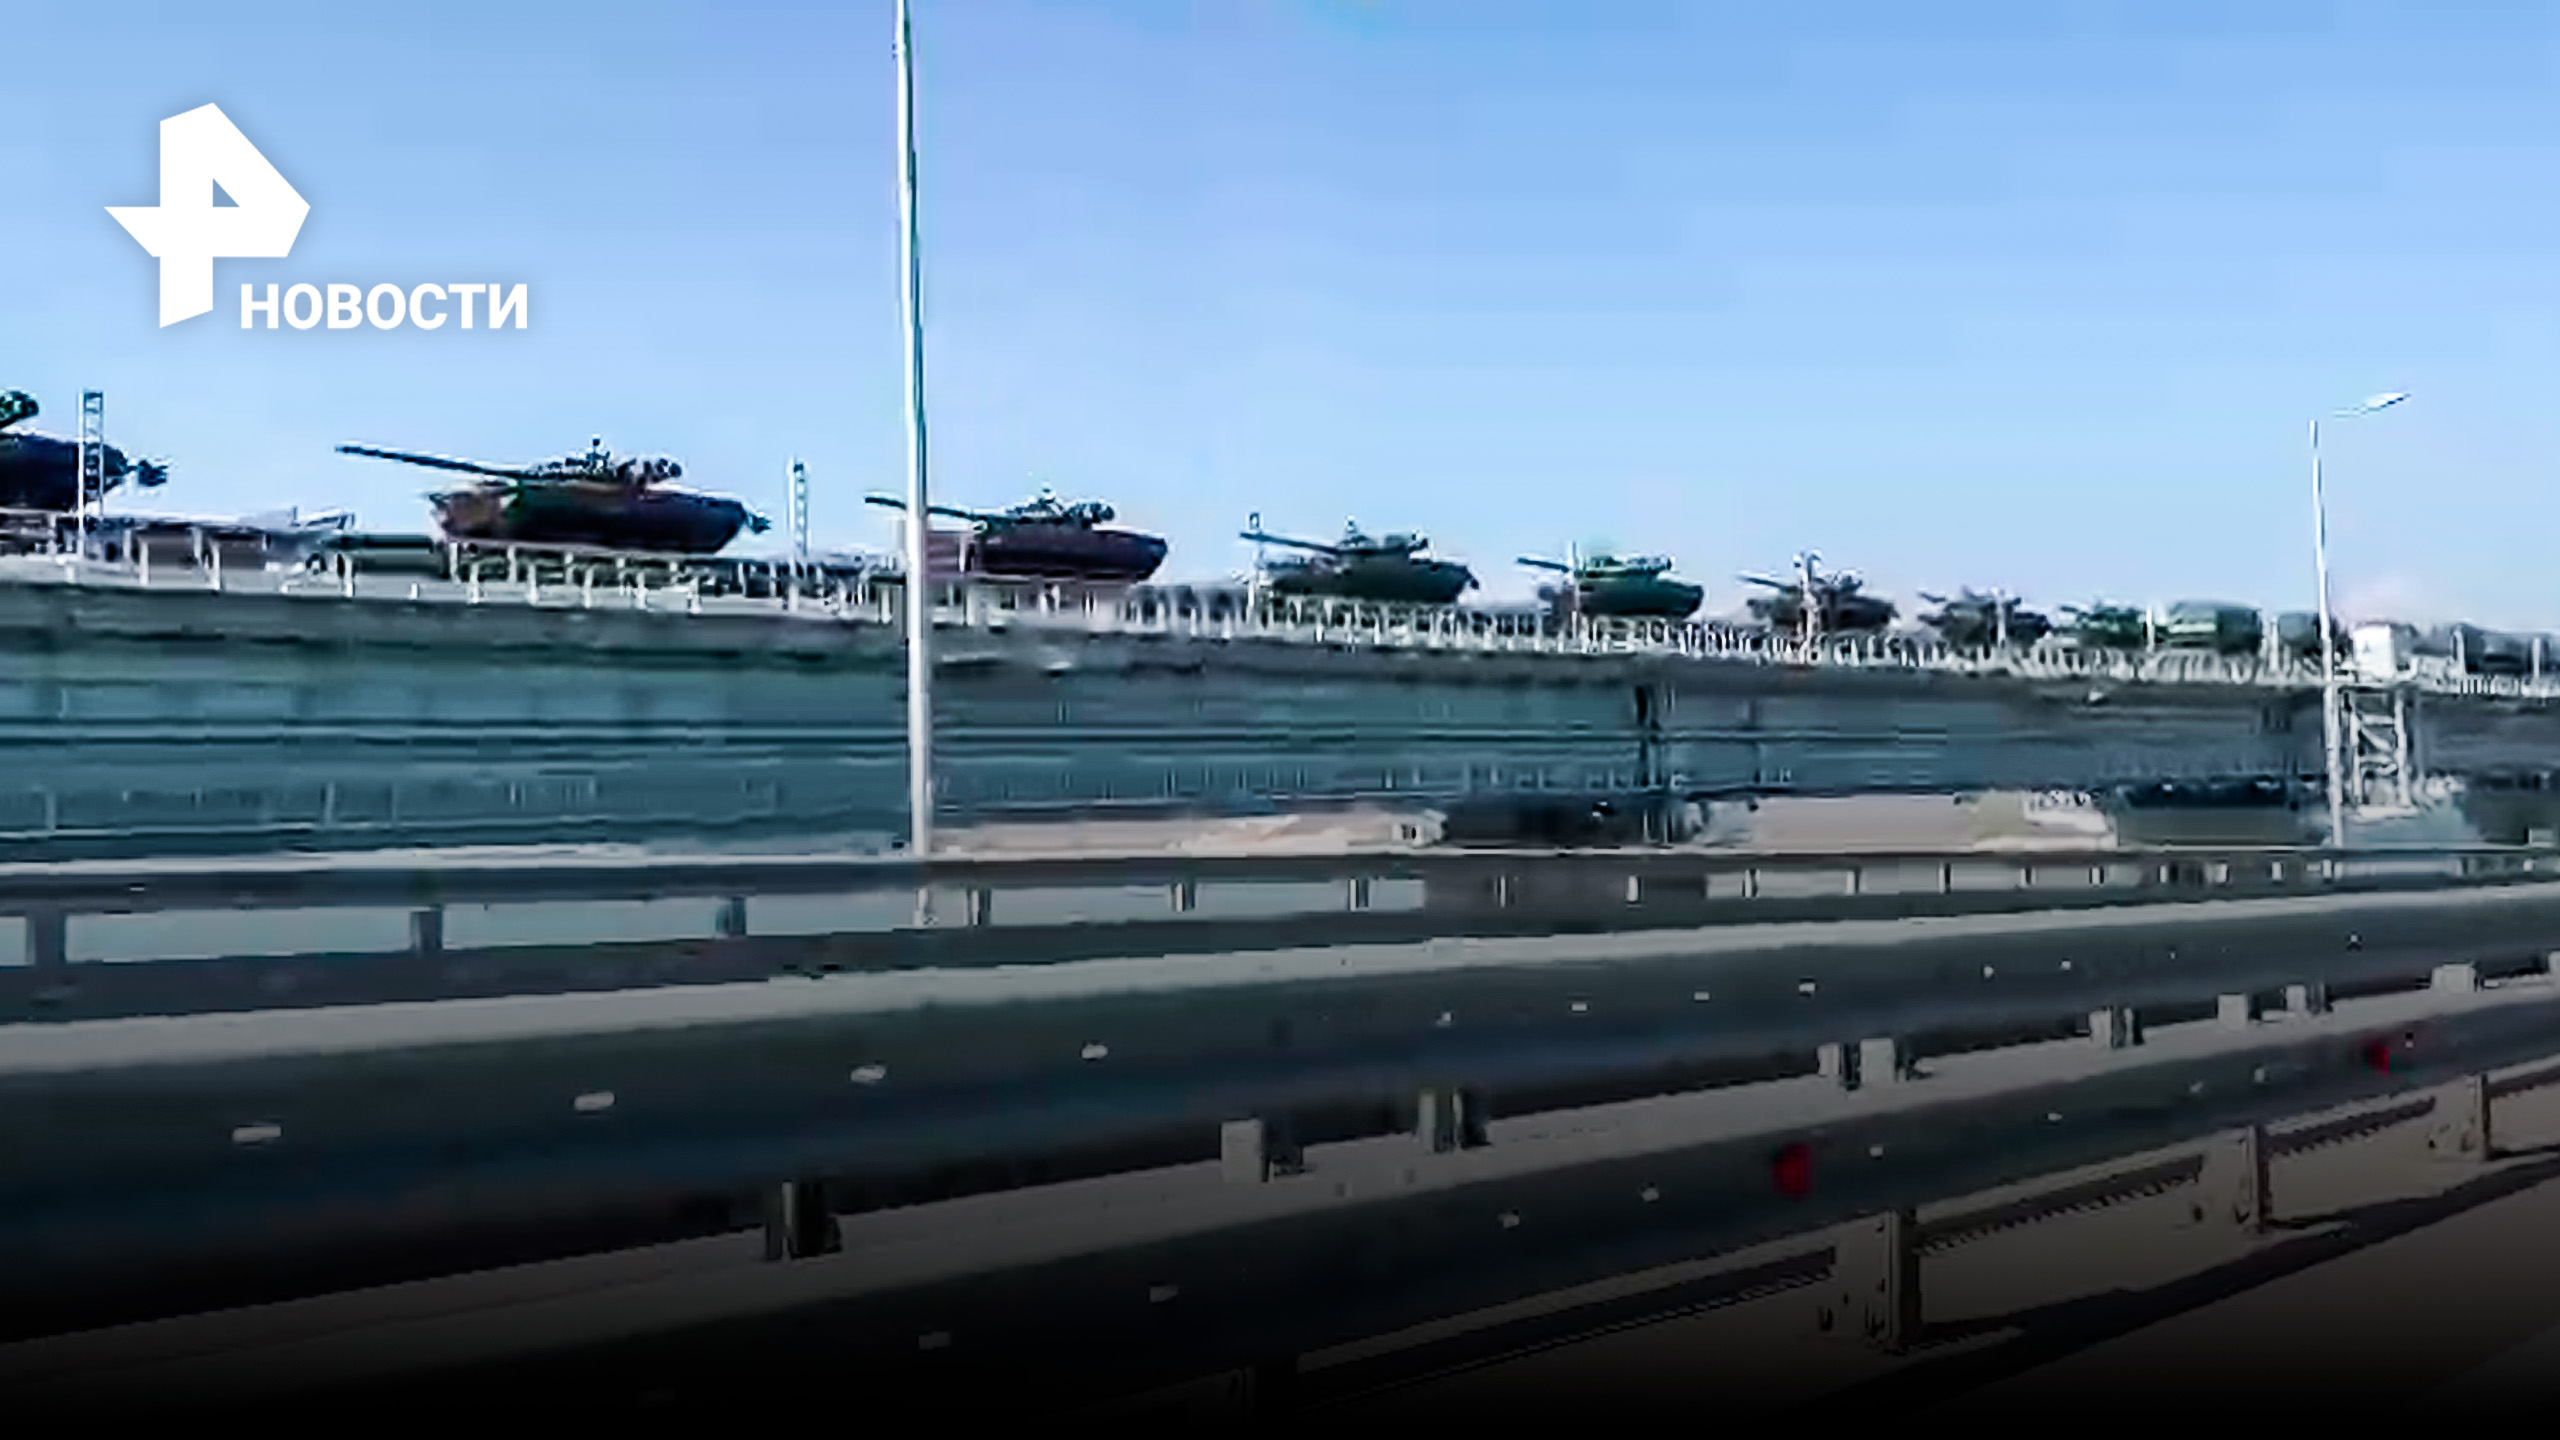 Смотреть со звуком: эмоциональный очевидец снял видео проезда военной техники по Крымскому мосту